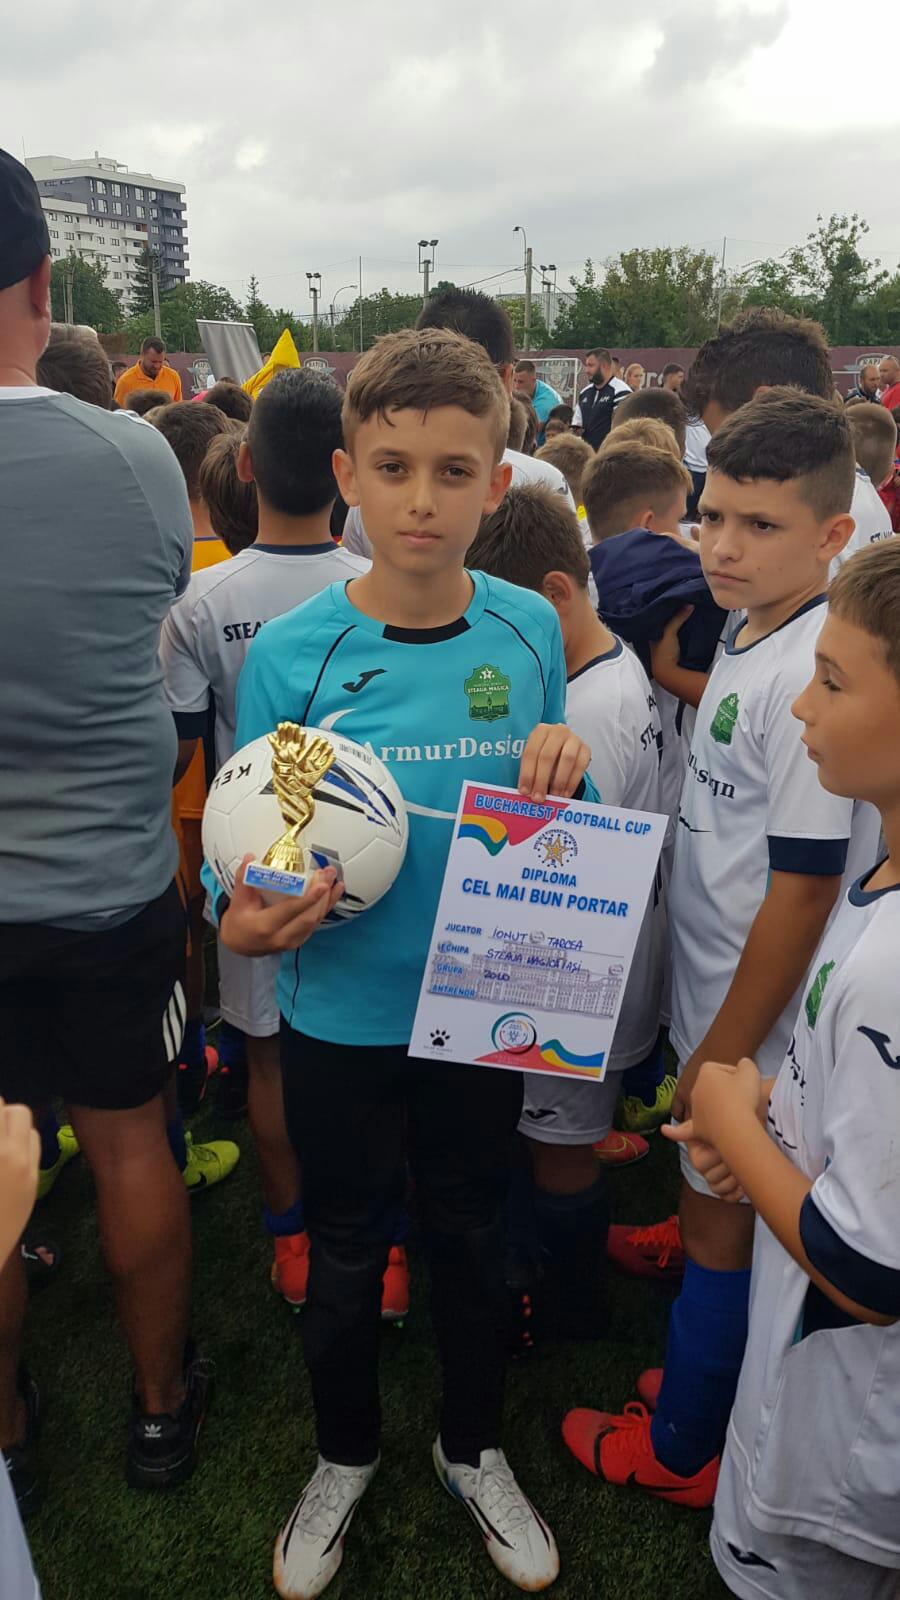 IaȘi Copiii De La Steaua Magică Iași Medaliați Cu Argint La Turneul ”bucharest Football Cup